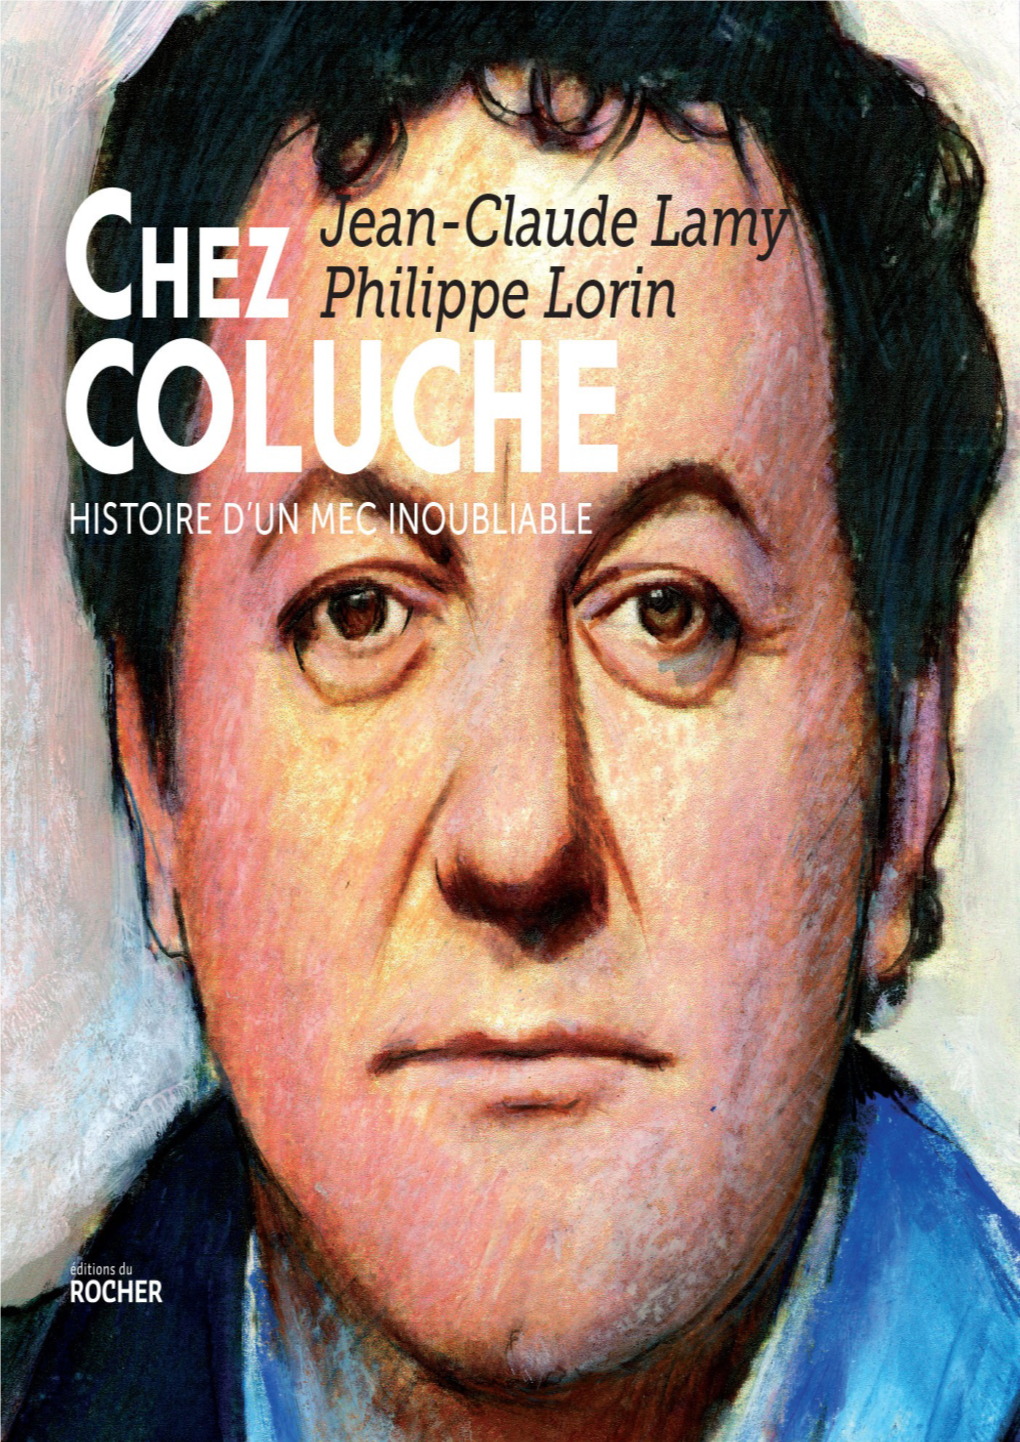 CHEZ COLUCHE HISTOIRE D’UN MEC INOUBLIABLE Illustrations © Philippe Lorin